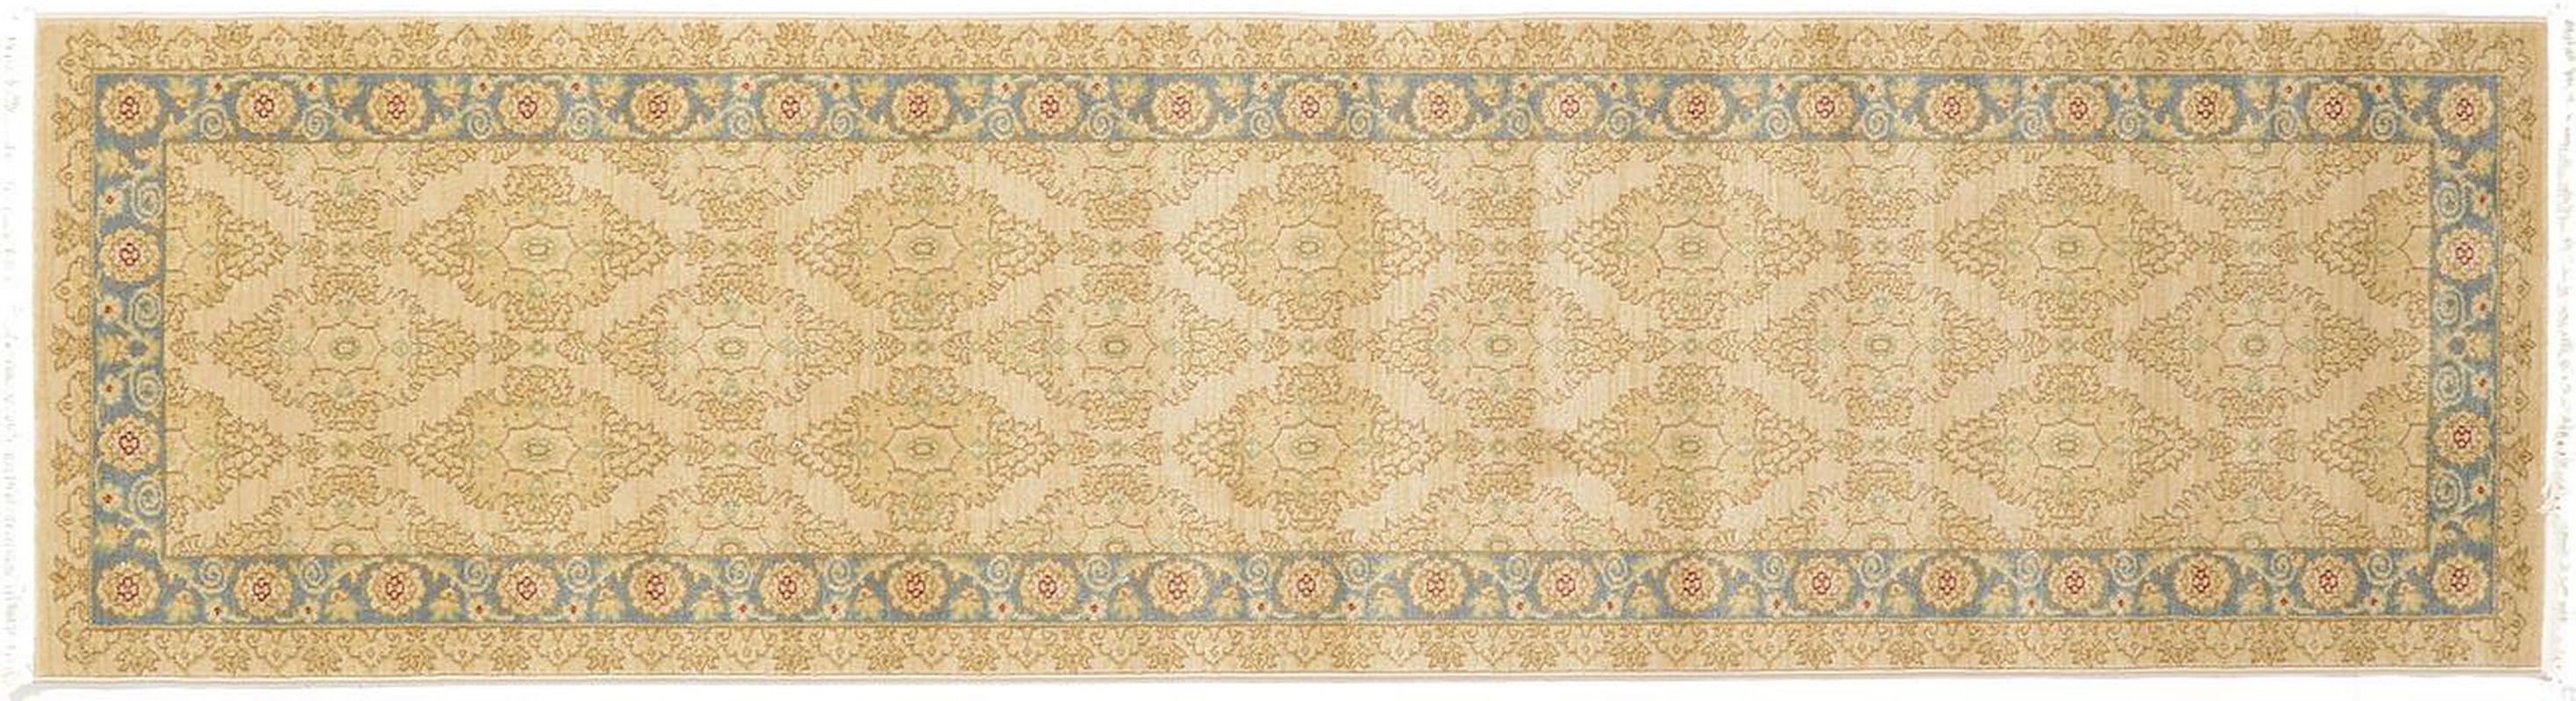 古典经典地毯ID9668